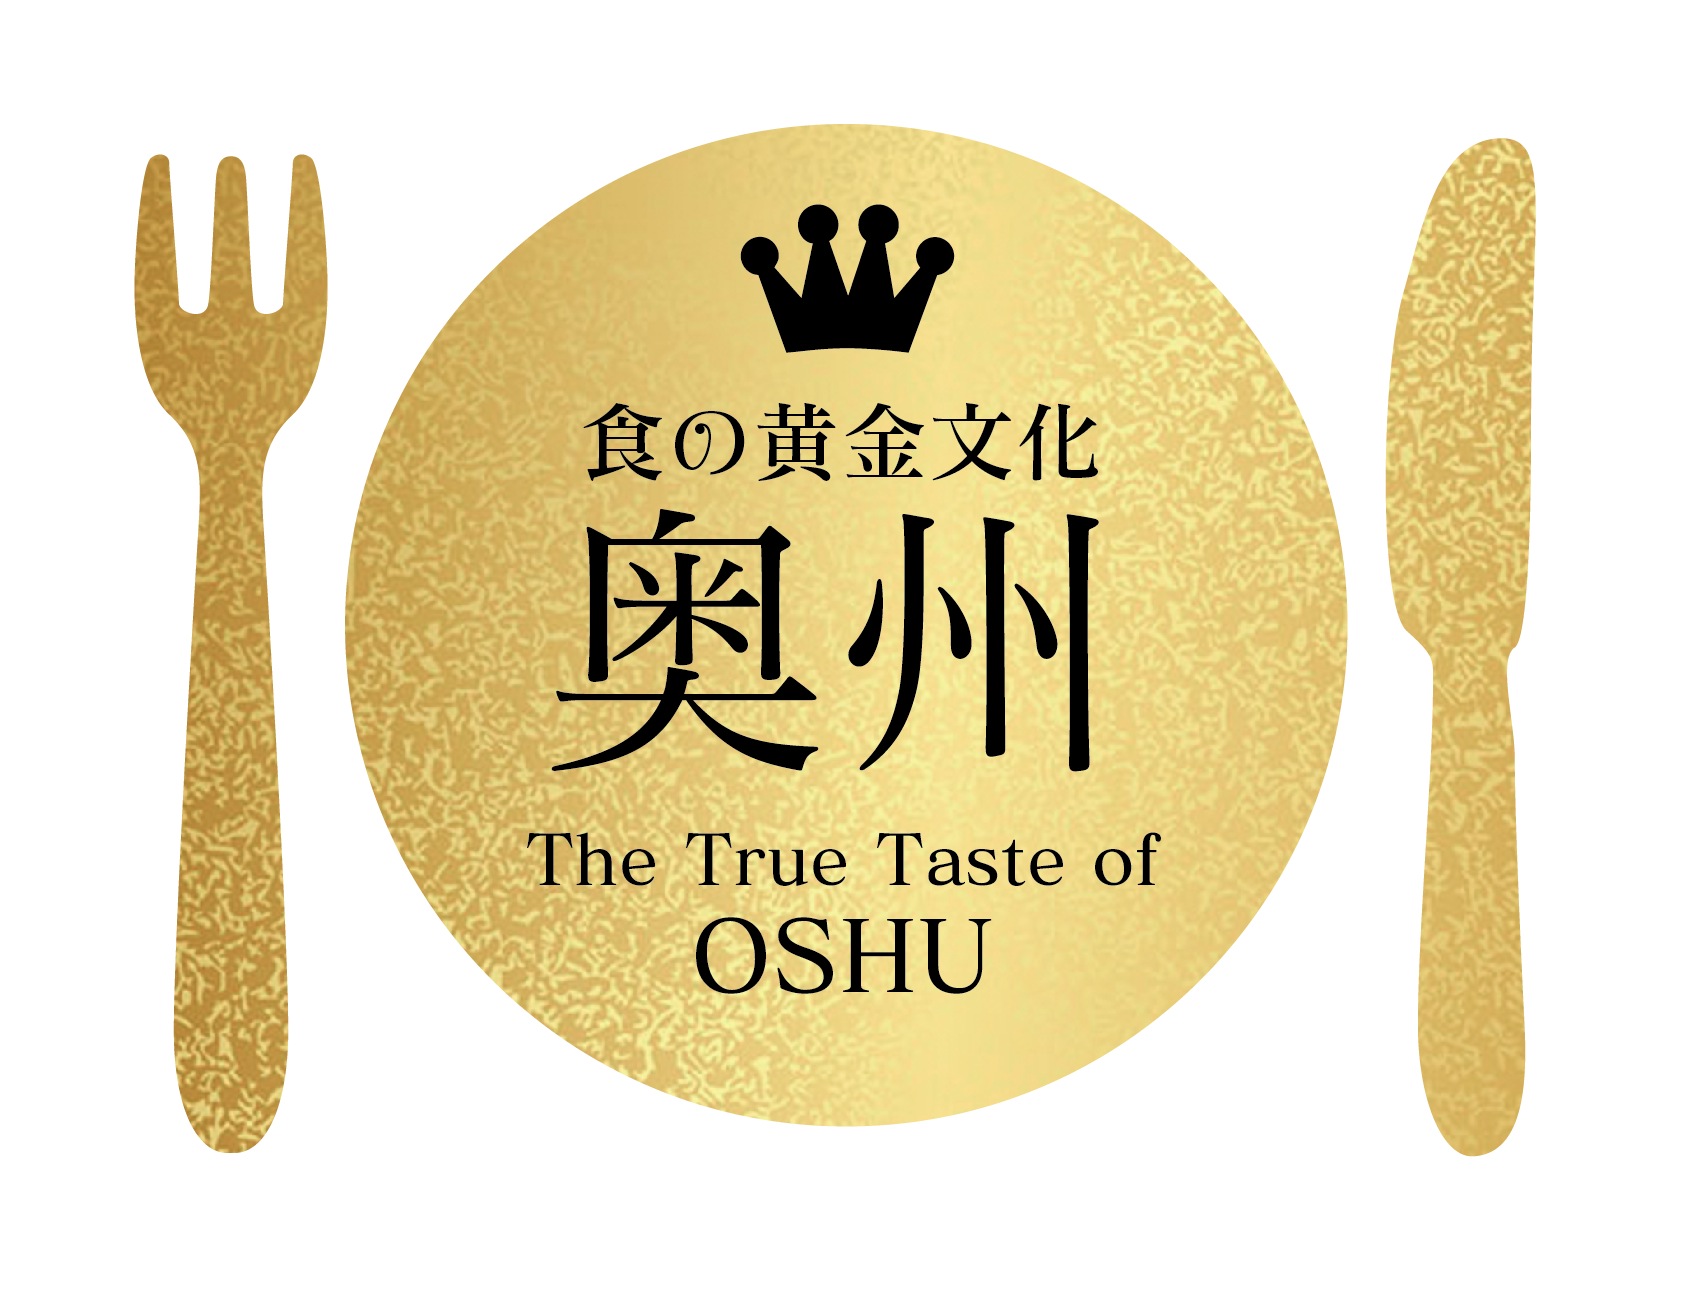 金色の丸いお皿に黒文字で王冠と「食の黄金文化 奥州 The True Taste of OSHU」と描かれ左右の左に金色のフォーク、右に金色のナイフが並べられたロゴマークの写真